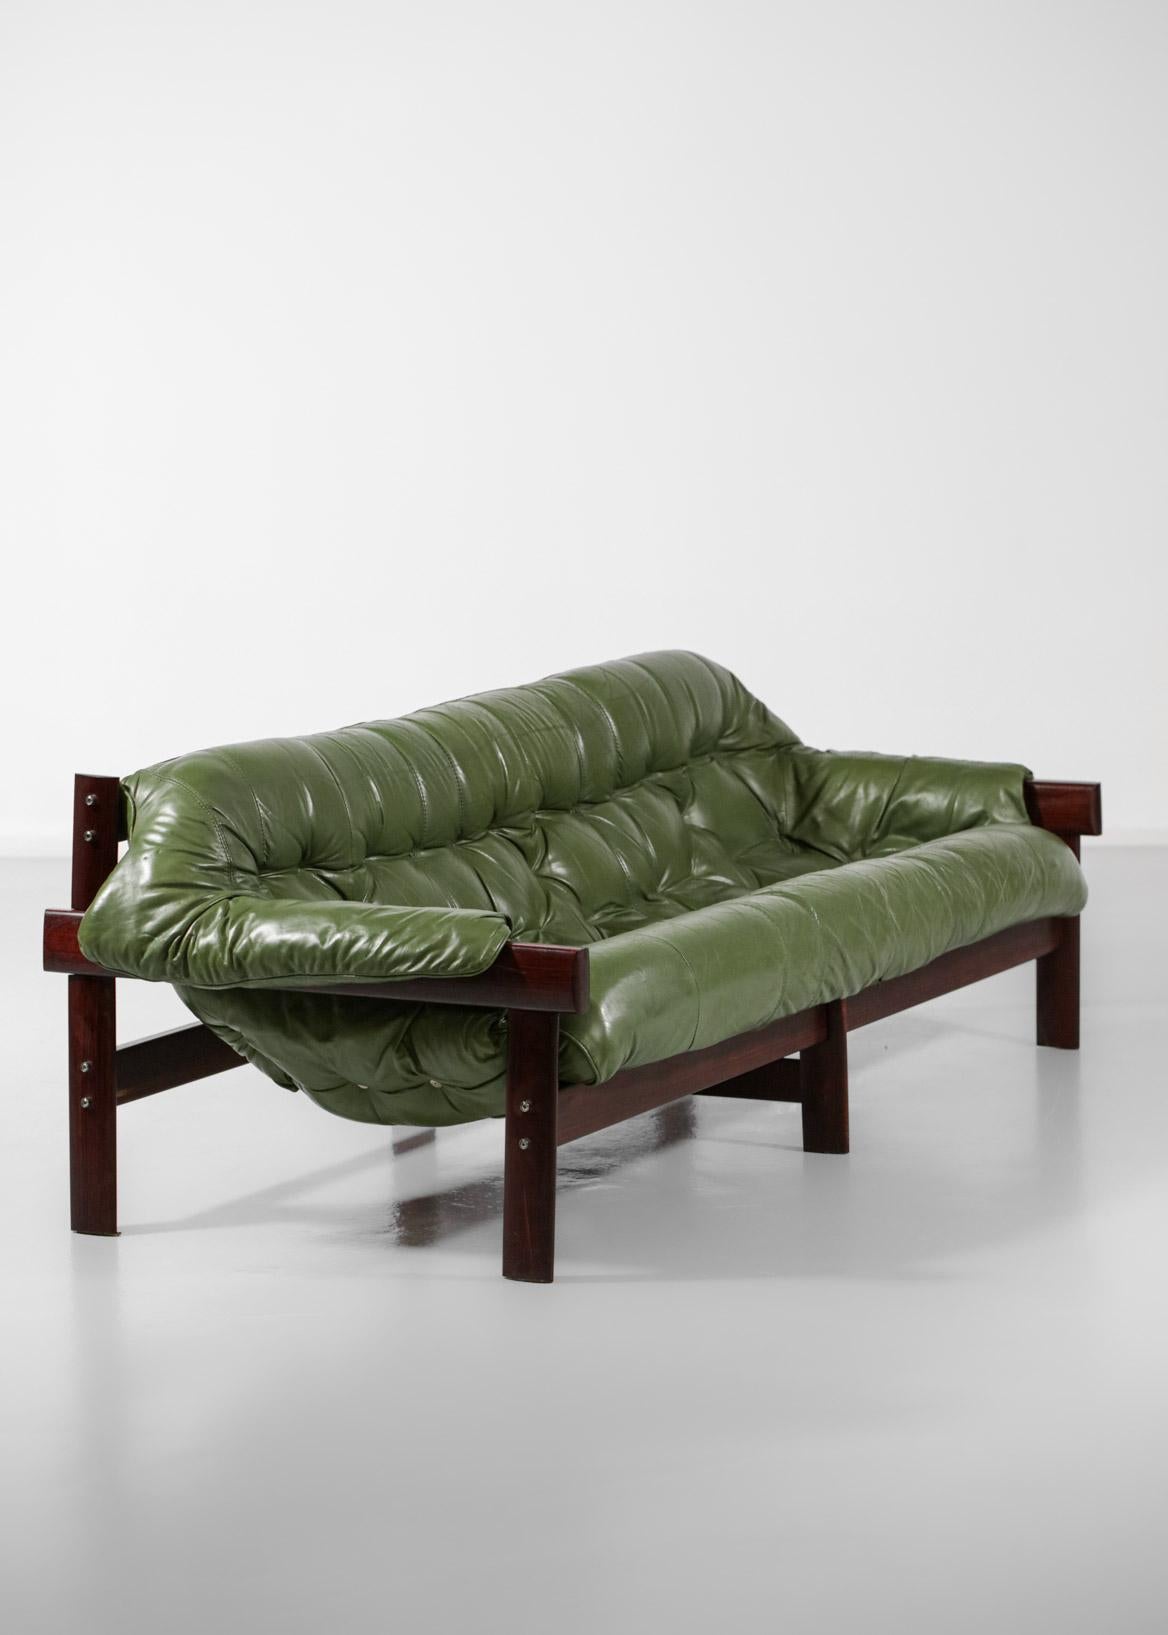 Three-Seater Sofa by Brazilian Designer Percival Lafer Design Leather 4